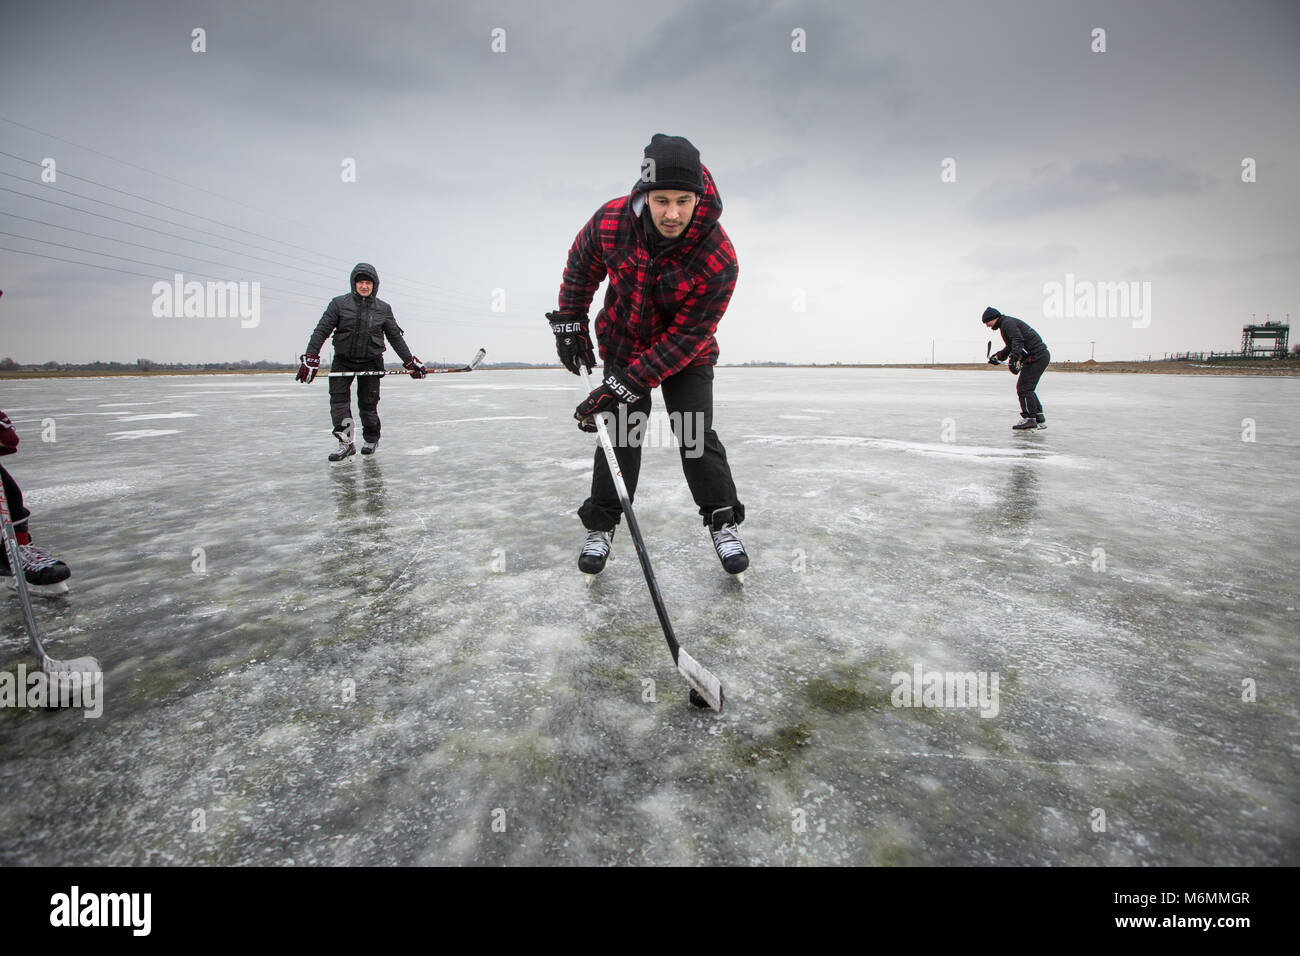 Menschen spielen Eishockey und Eislaufen auf dem Cambridgeshire Fens in der Nähe von Peterborough am Freitag morgen März 2. Nachdem die überfluteten Felder auf die aktuelle Kälte erstarrte, sein, das erste mal seit 6 Jahren den Fens über eingefroren haben. Skater, die sich scharen, um die gefrorene Cambridgeshire Fens heute (Freitag) Nach dem Tier aus dem Osten gab Ihnen die seltene Gelegenheit, den antiken Sport zum ersten Mal in sechs Jahren zu genießen. Flache Gewässer in der Niedermoore in eine riesige Natureisbahn gedreht worden und ist heute ein Paradies für Skater. Skater Stockfoto